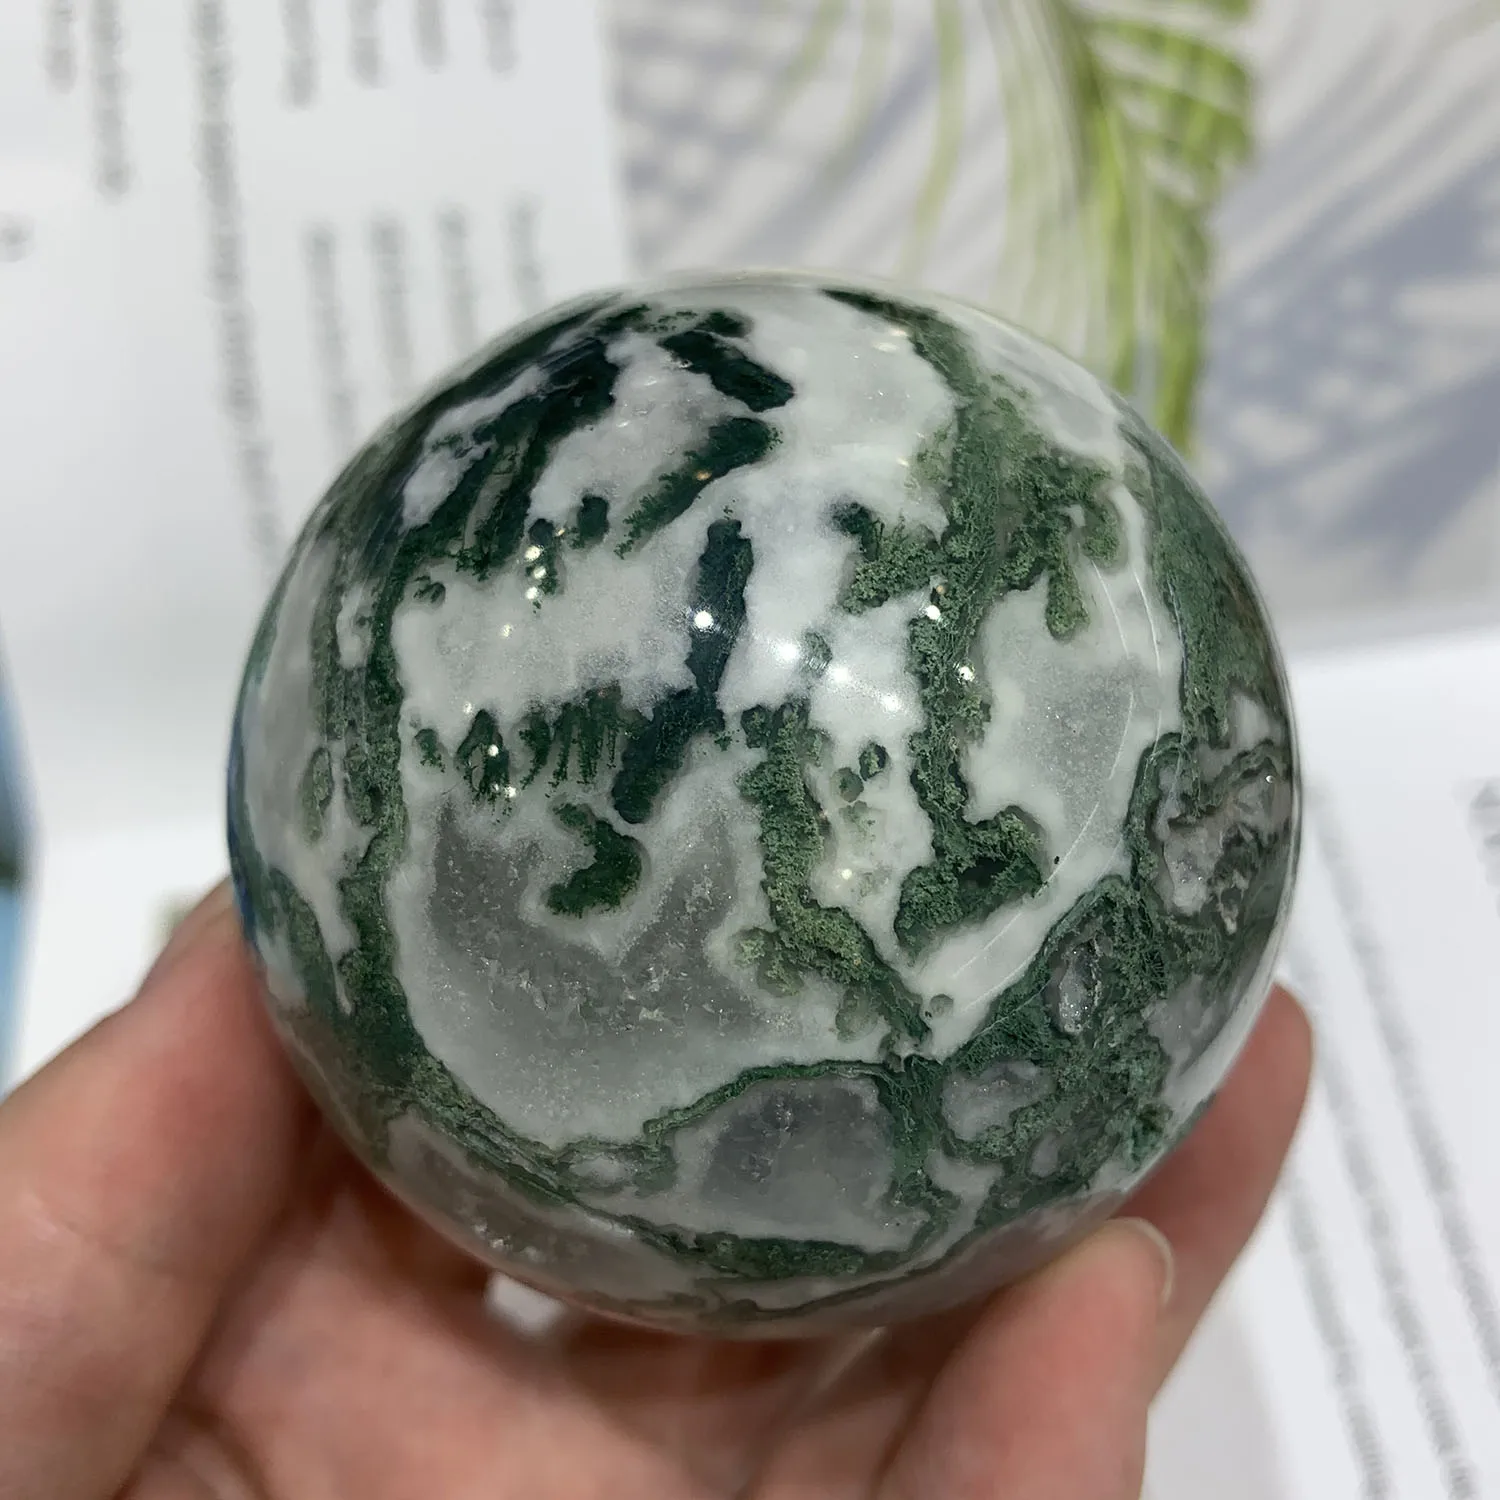 

60-65 мм Натуральный Мох агатовый шарик лечебный хрустальный камень сфера украшение для дома гатовый гадания